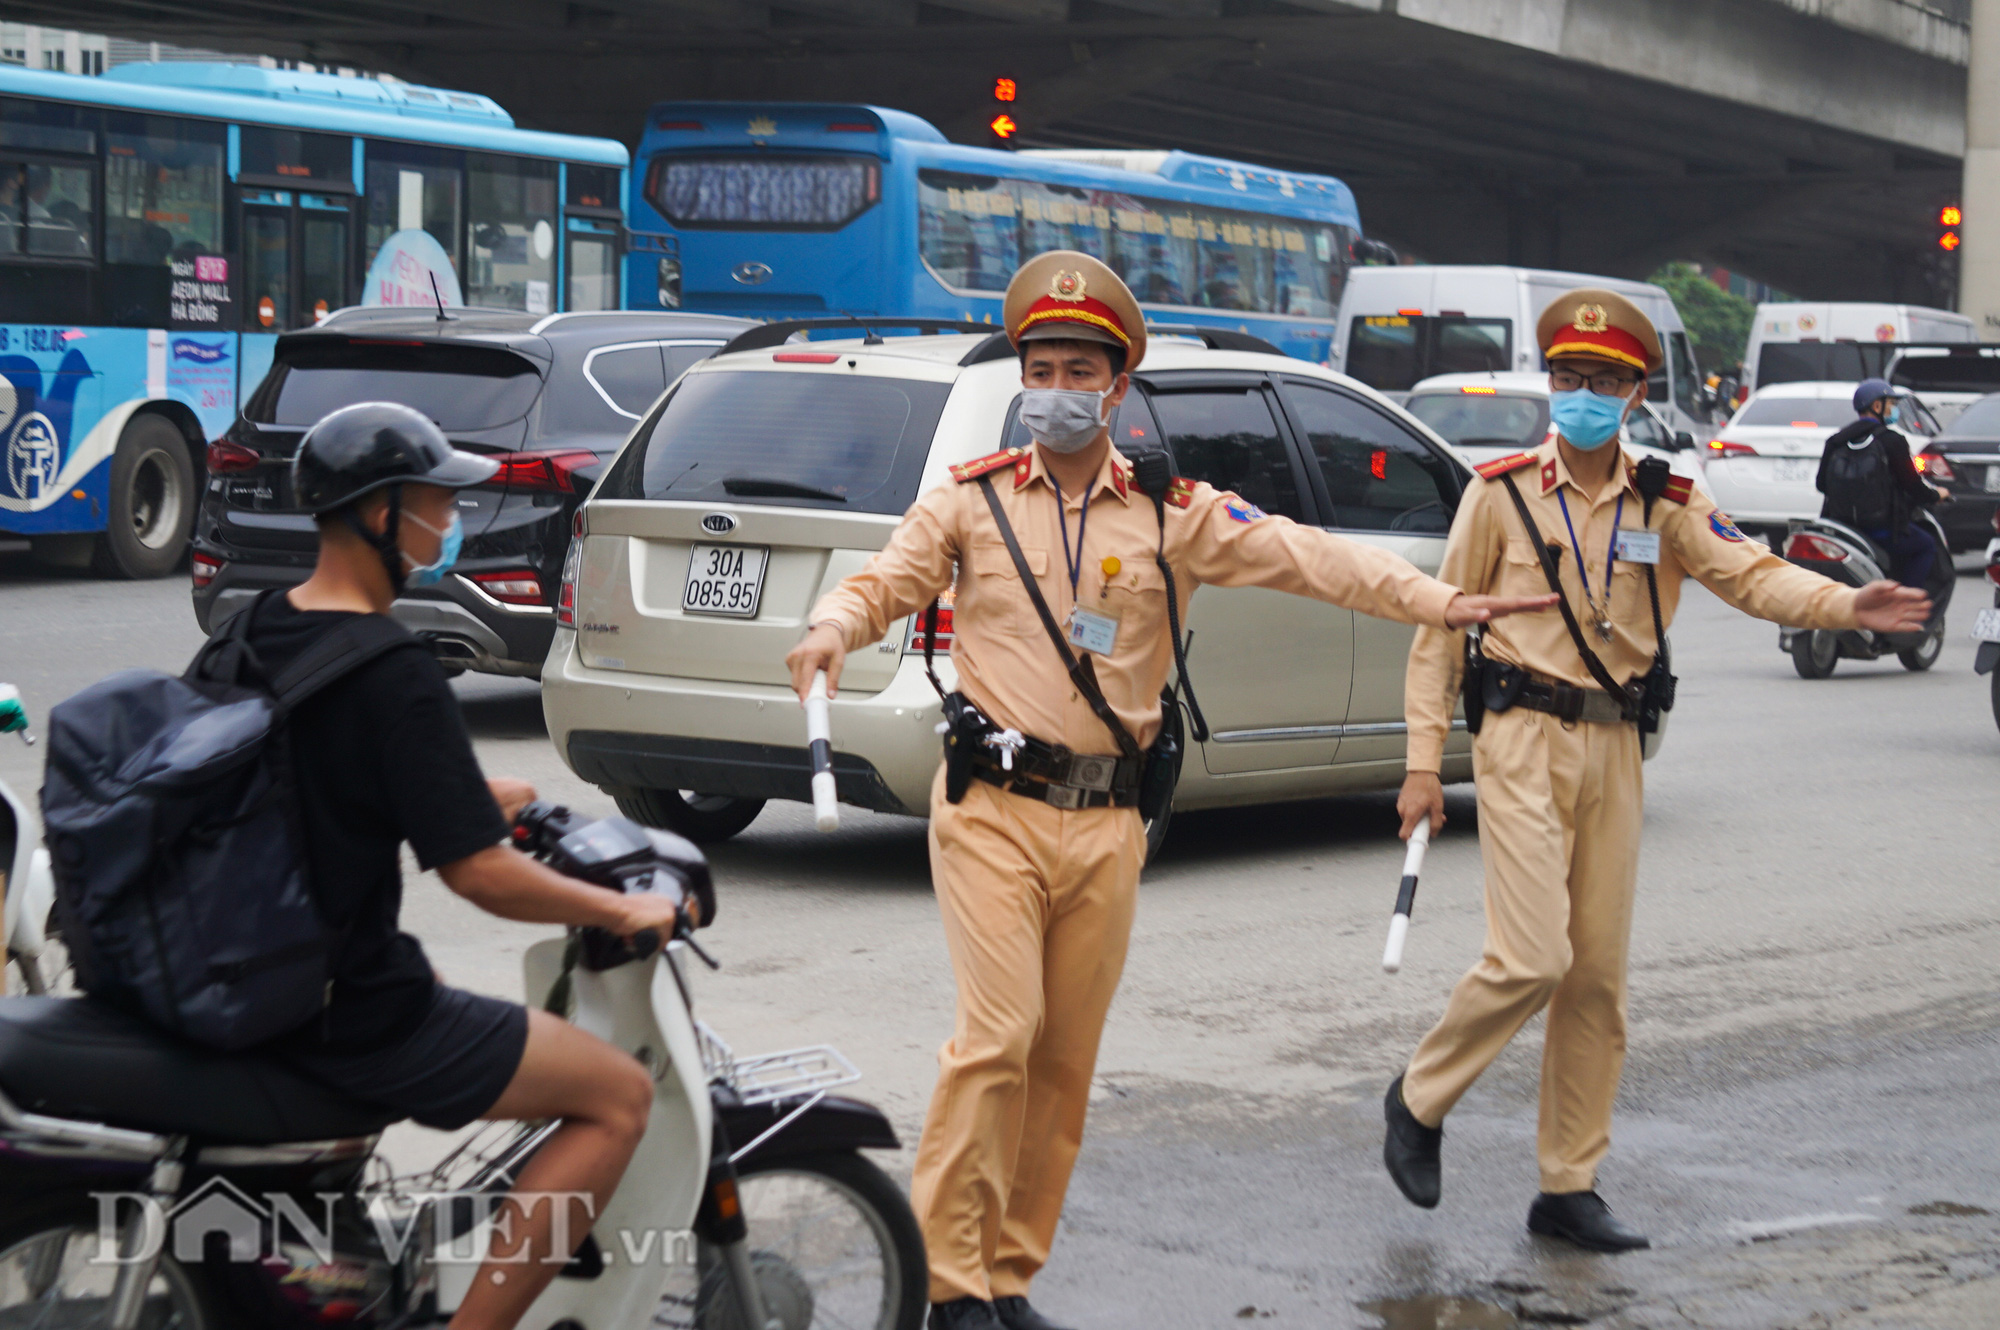 CSGT Hà Nội bắt đầu ra quân tổng kiểm soát các phương tiện đường bộ - Ảnh 2.